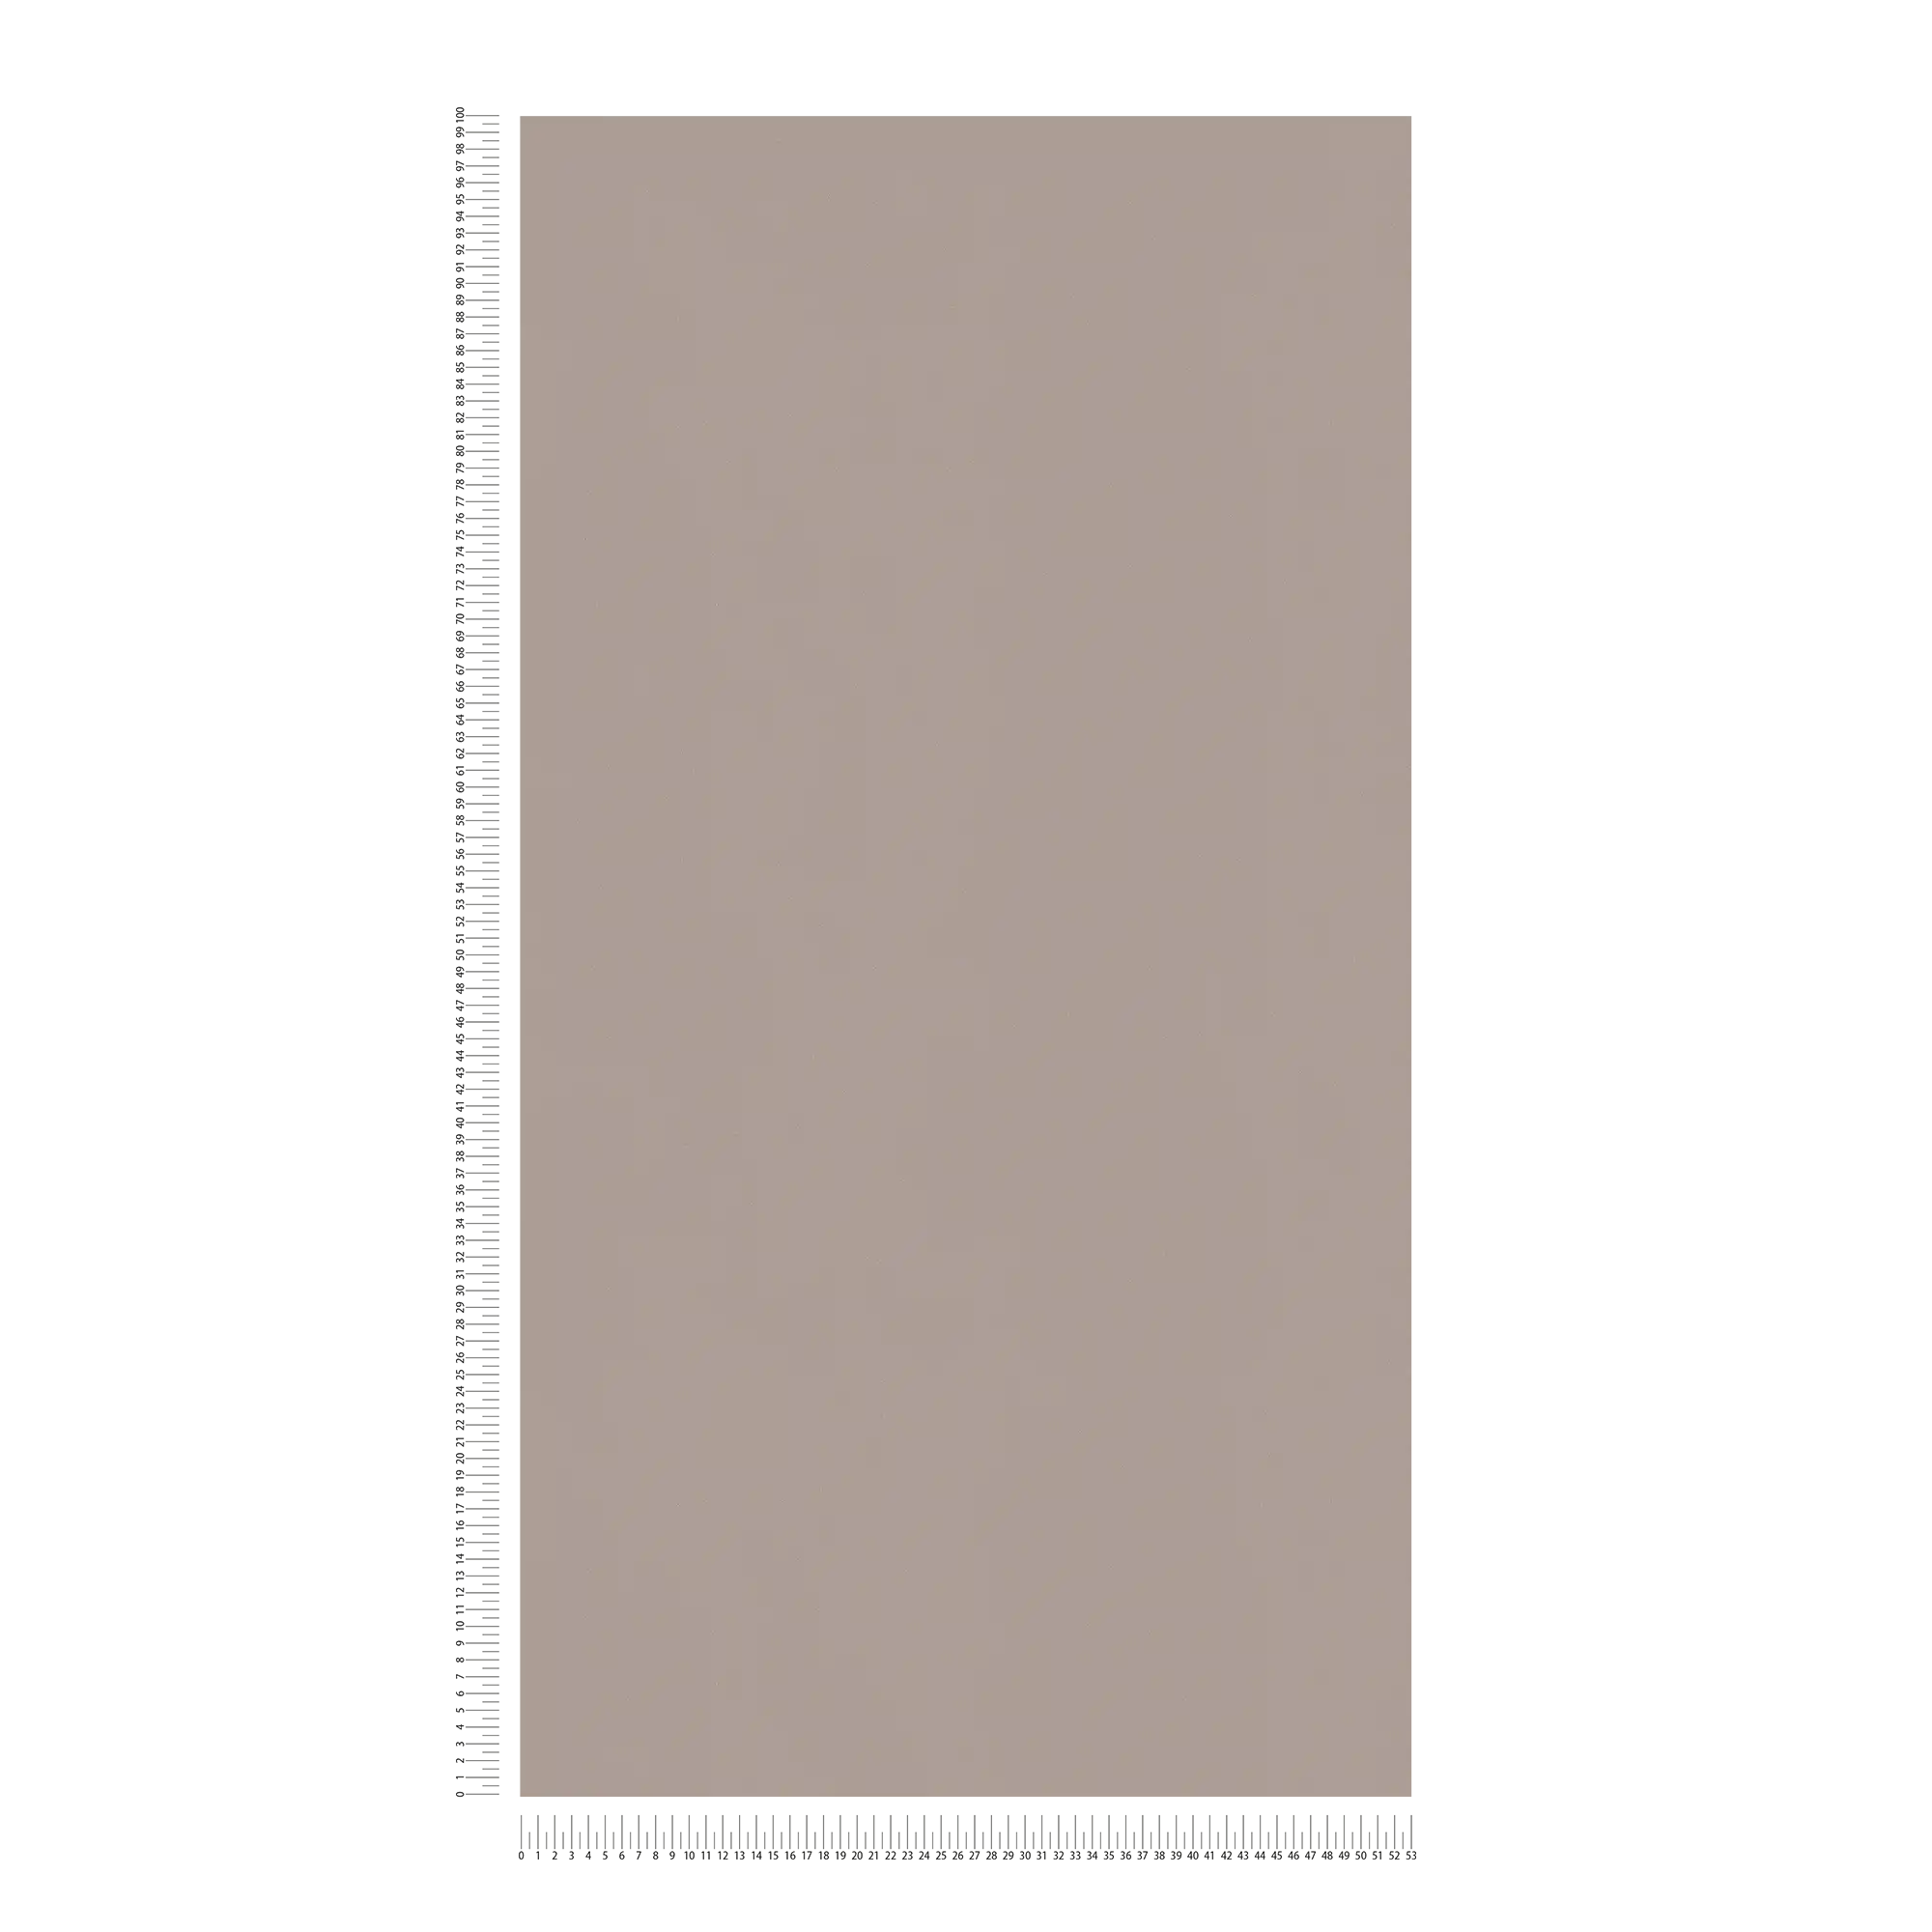             Papel pintado unitario color cálido, con textura - marrón
        